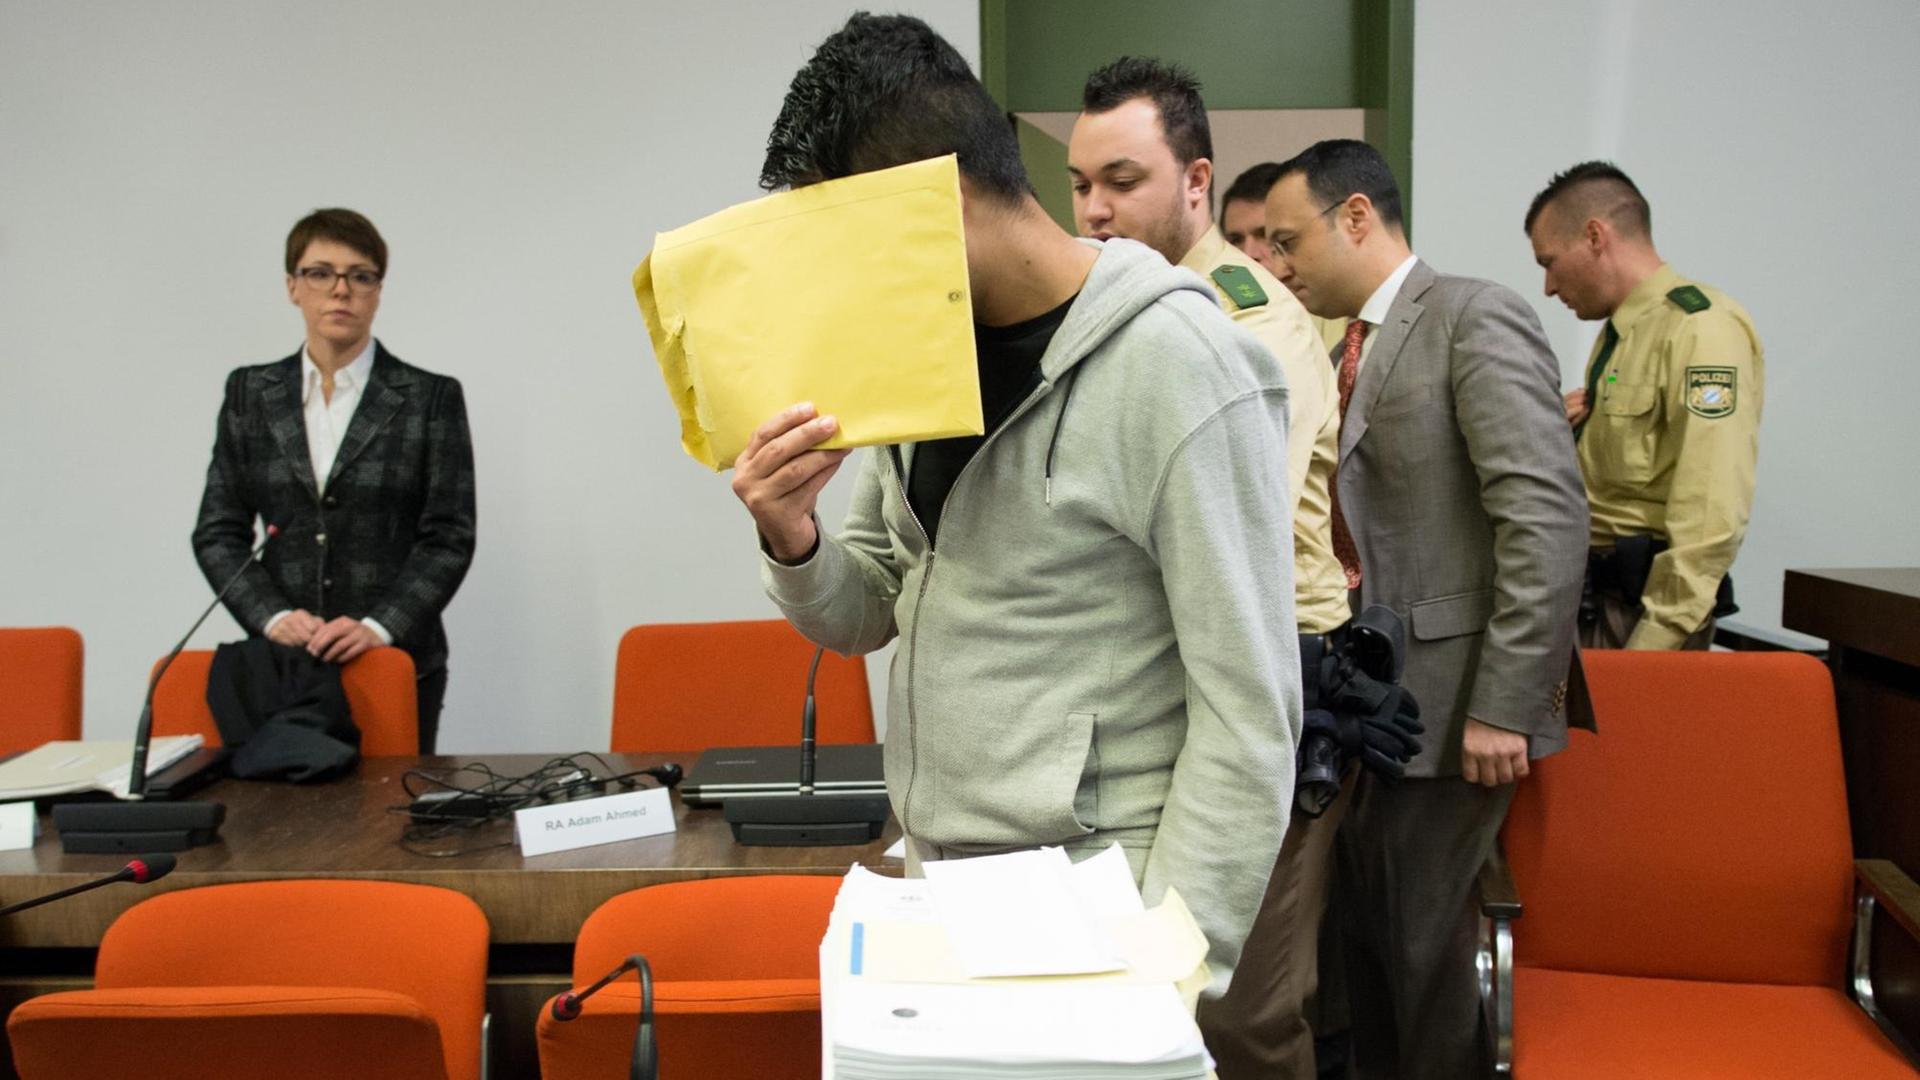 Ein junger Mann versteckt als Angeklagter am 20.01.2015 in einem Gerichtssaal sein Gesicht hinter einem Umschlag. Um ihn herum stehen Polizisten und weitere Personen.